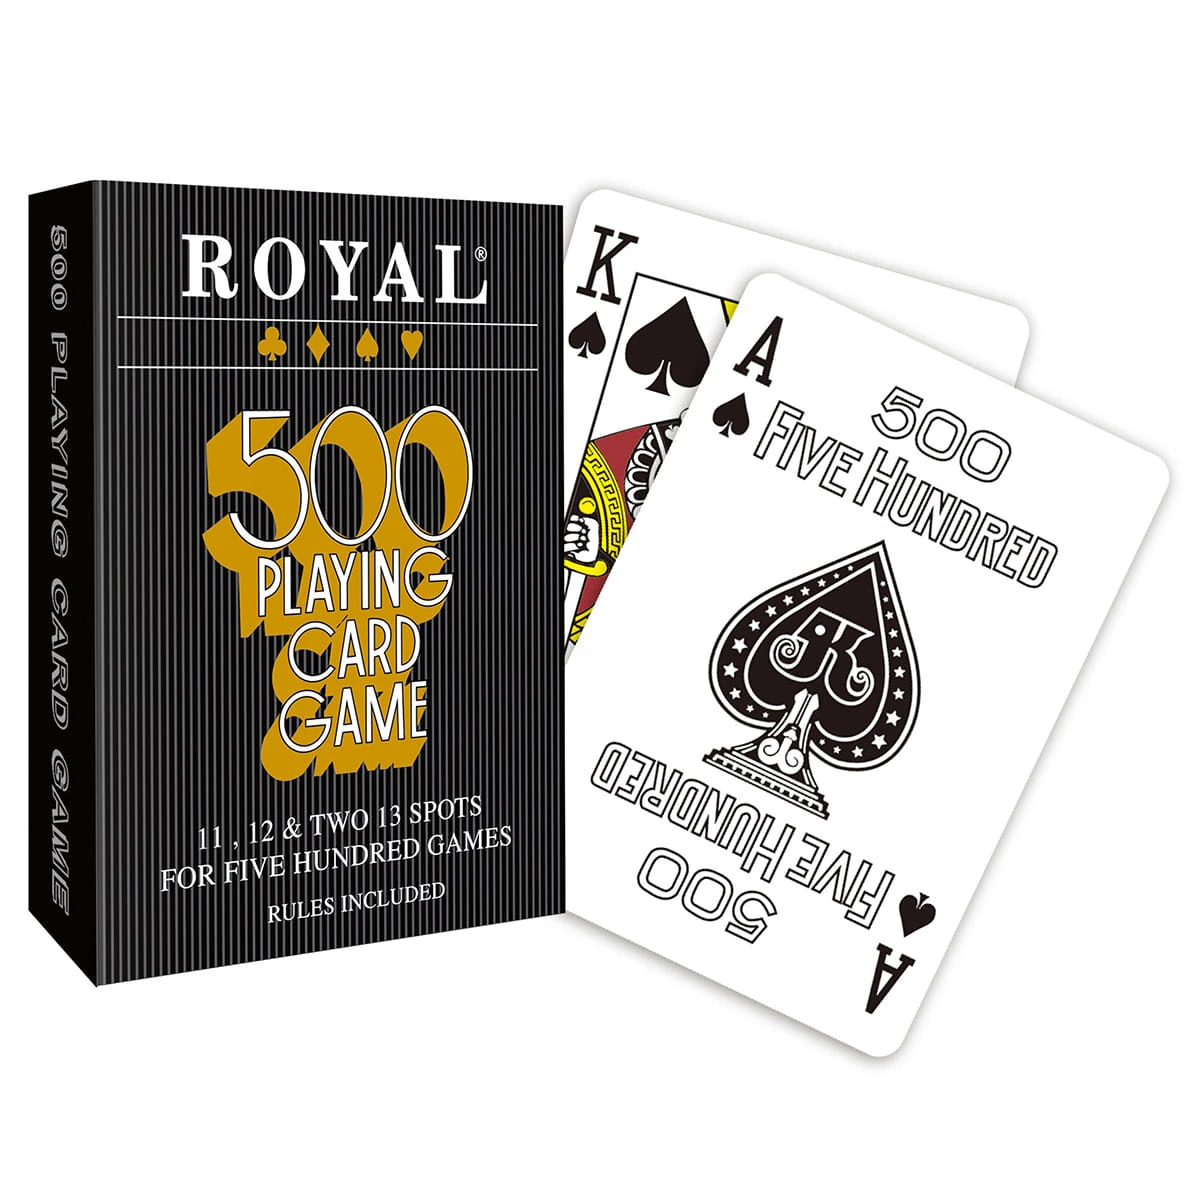 Royal 500 game Playing Cards